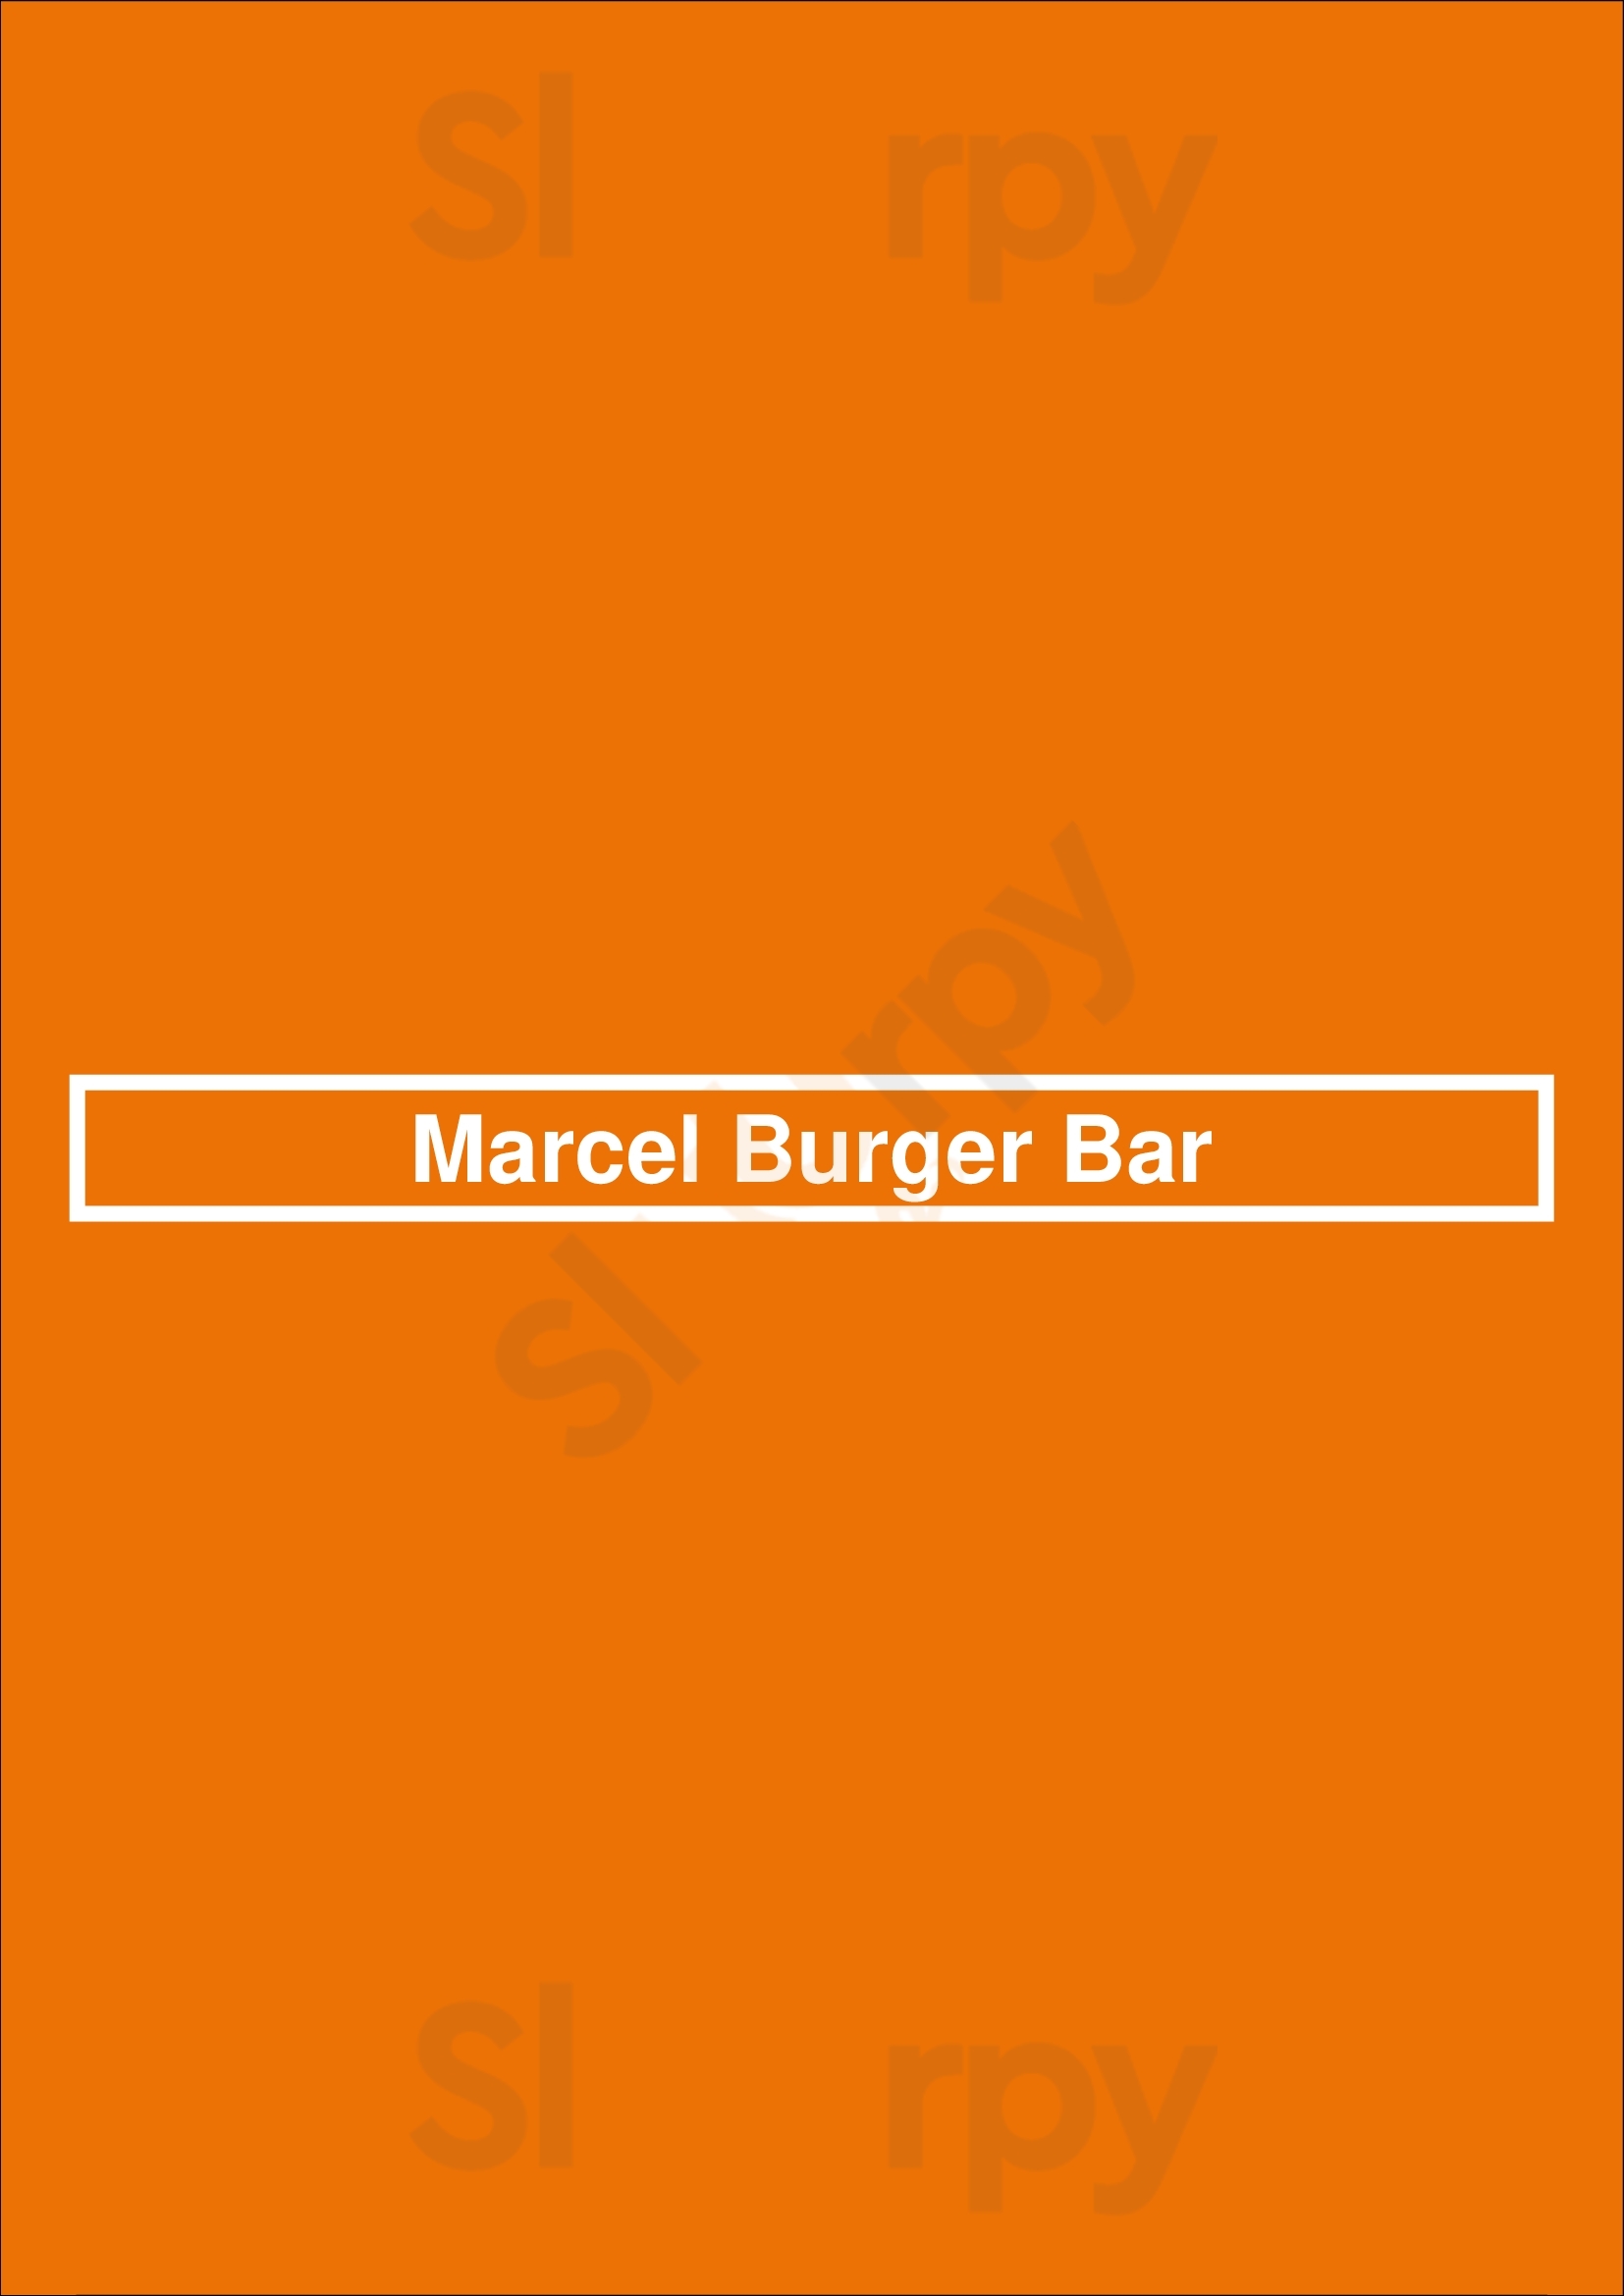 Marcel Burger Bar Uccle Menu - 1